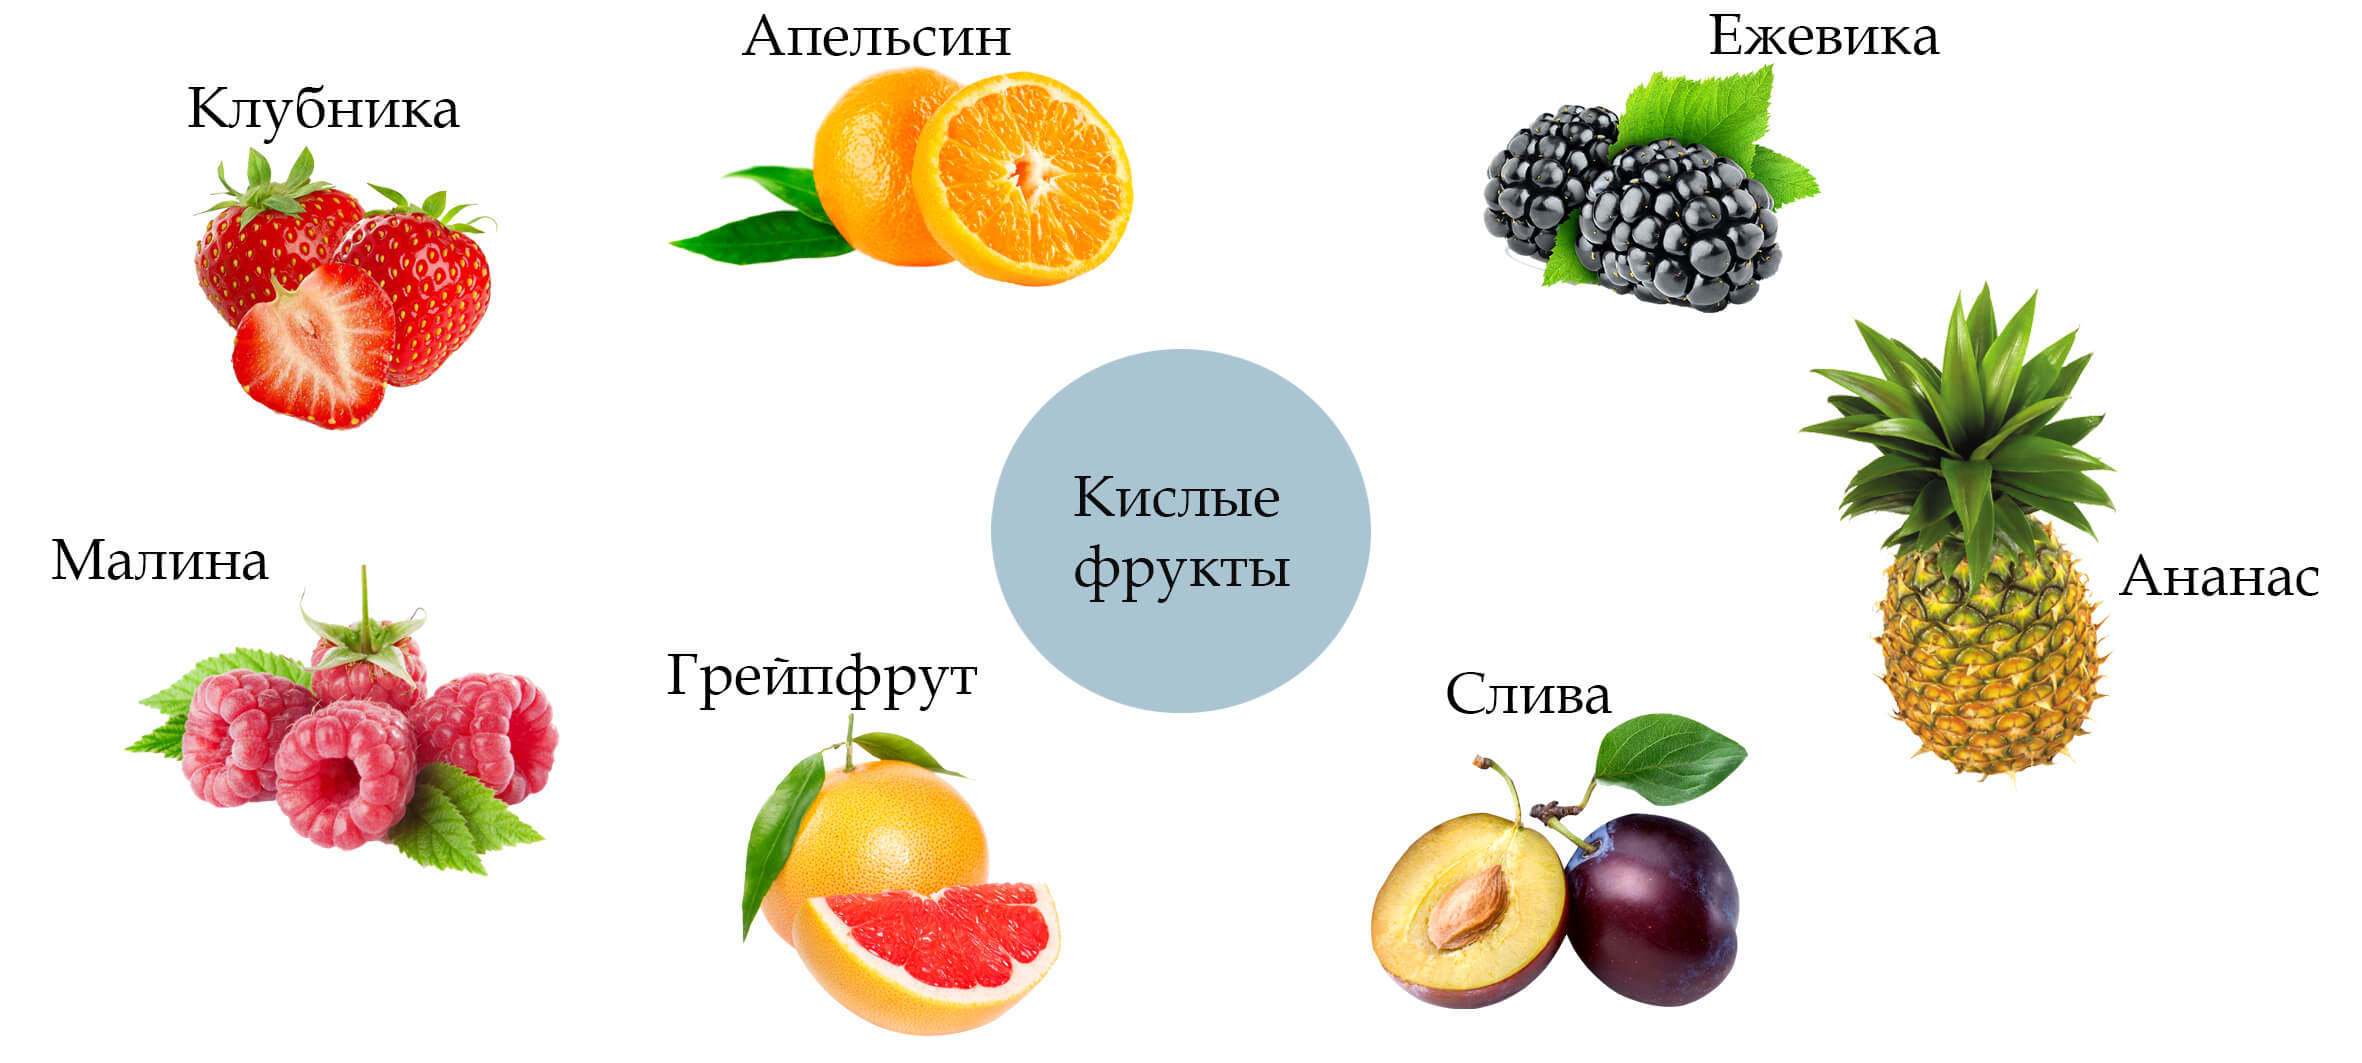 Кислые фрукты и ягоды список